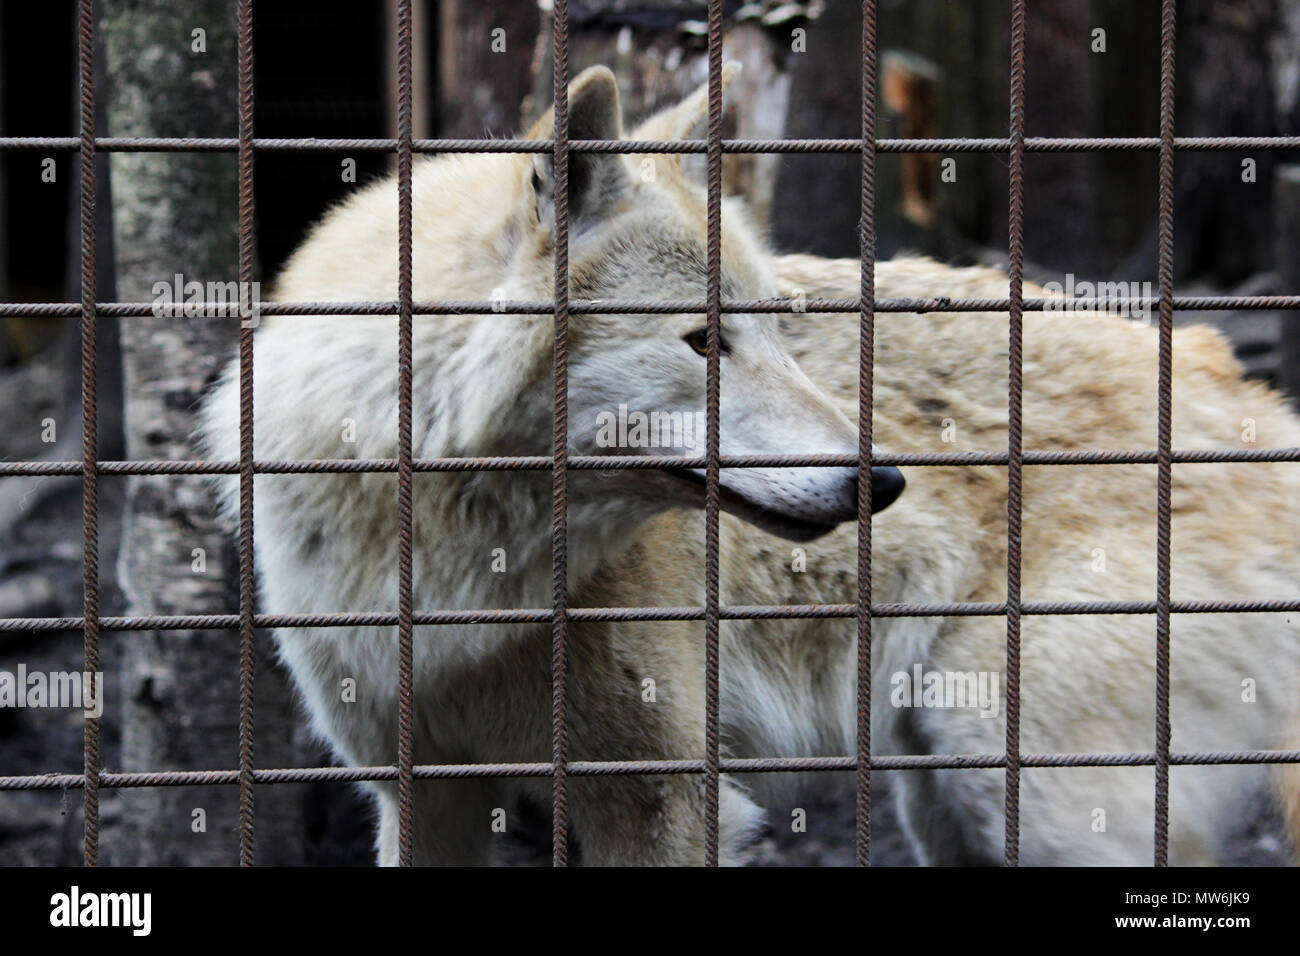 Le loup polaire derrière les barreaux, couleur d'été Canis lupus tundrarum. Chenil d'élevage de loups et de chiens-loups hybride. Loup dans une grande enceinte avec des bars. Banque D'Images